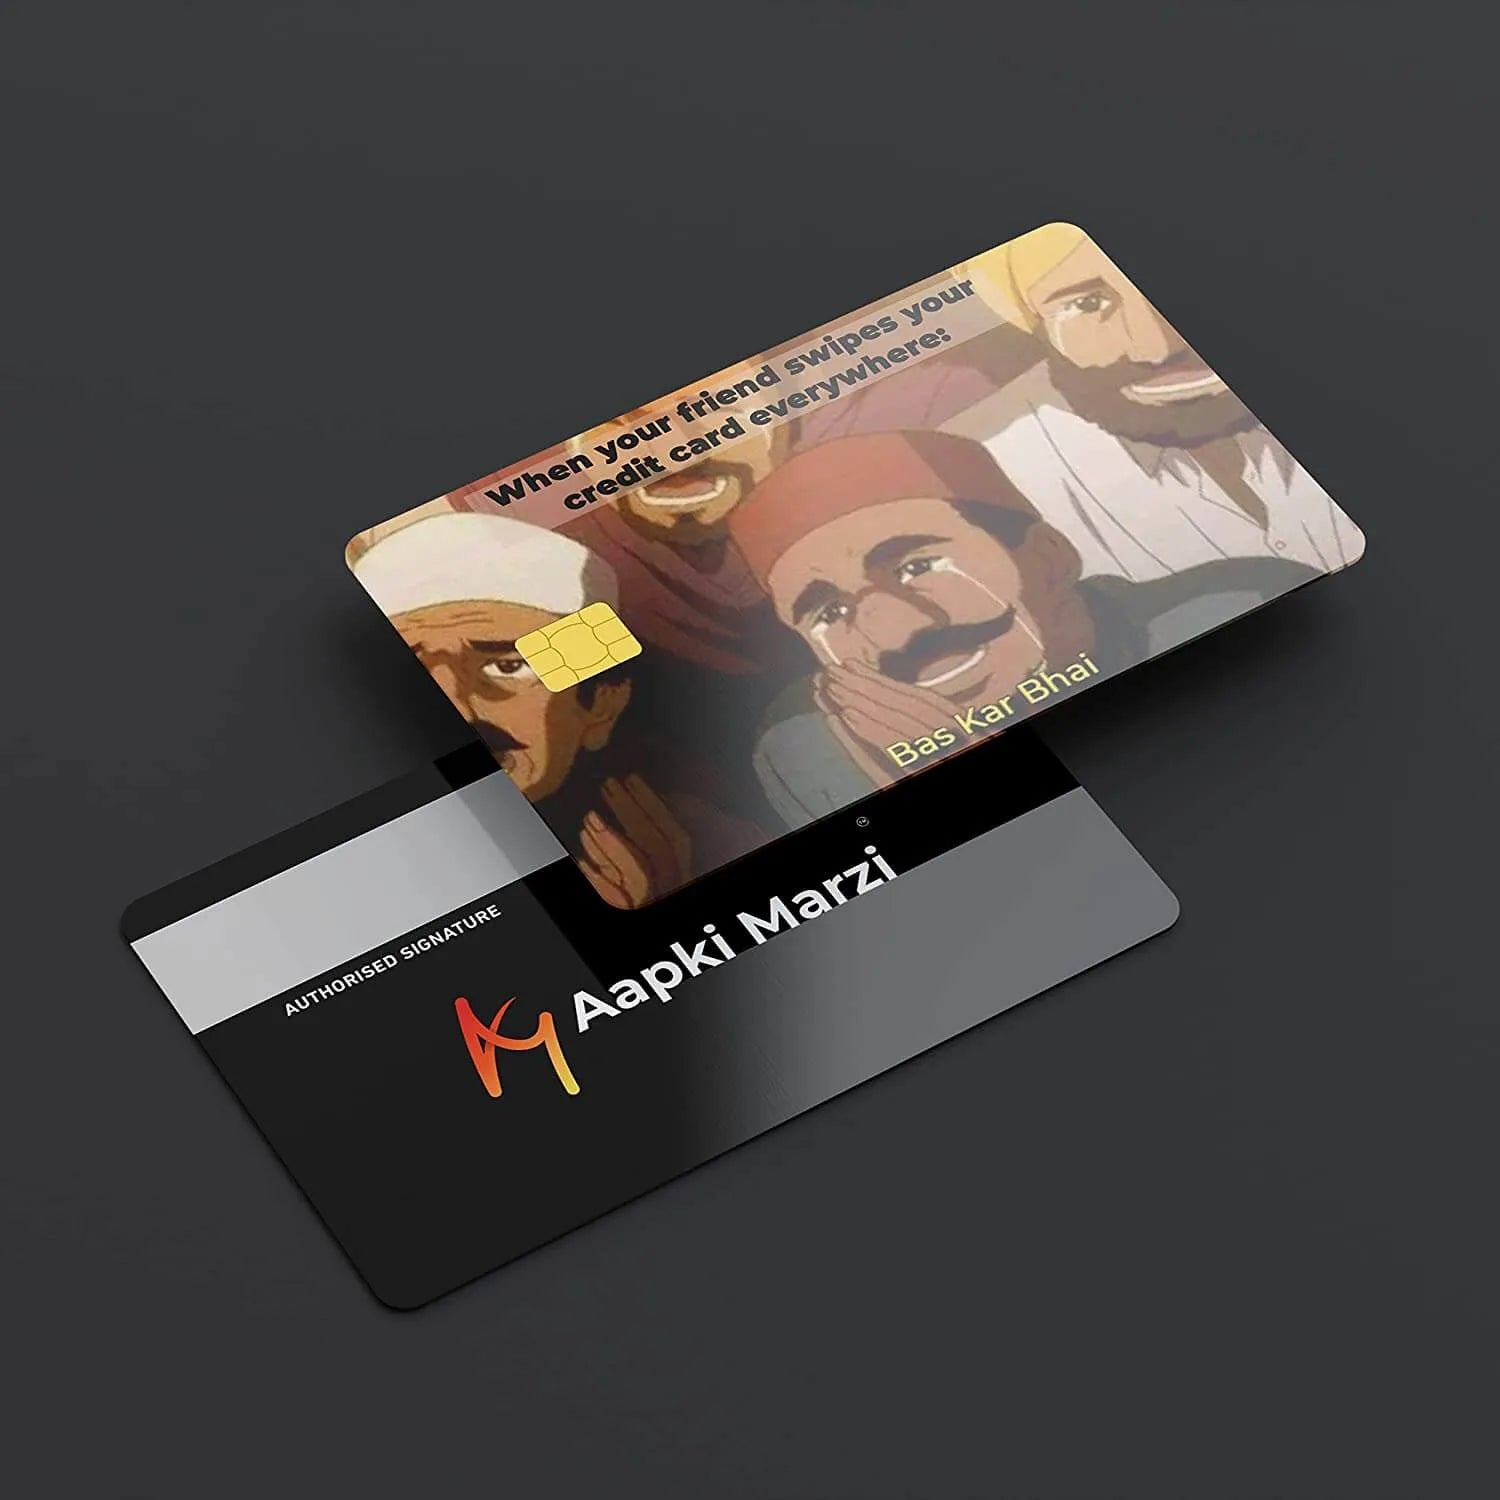 Bas Kar Bhai credit card skins